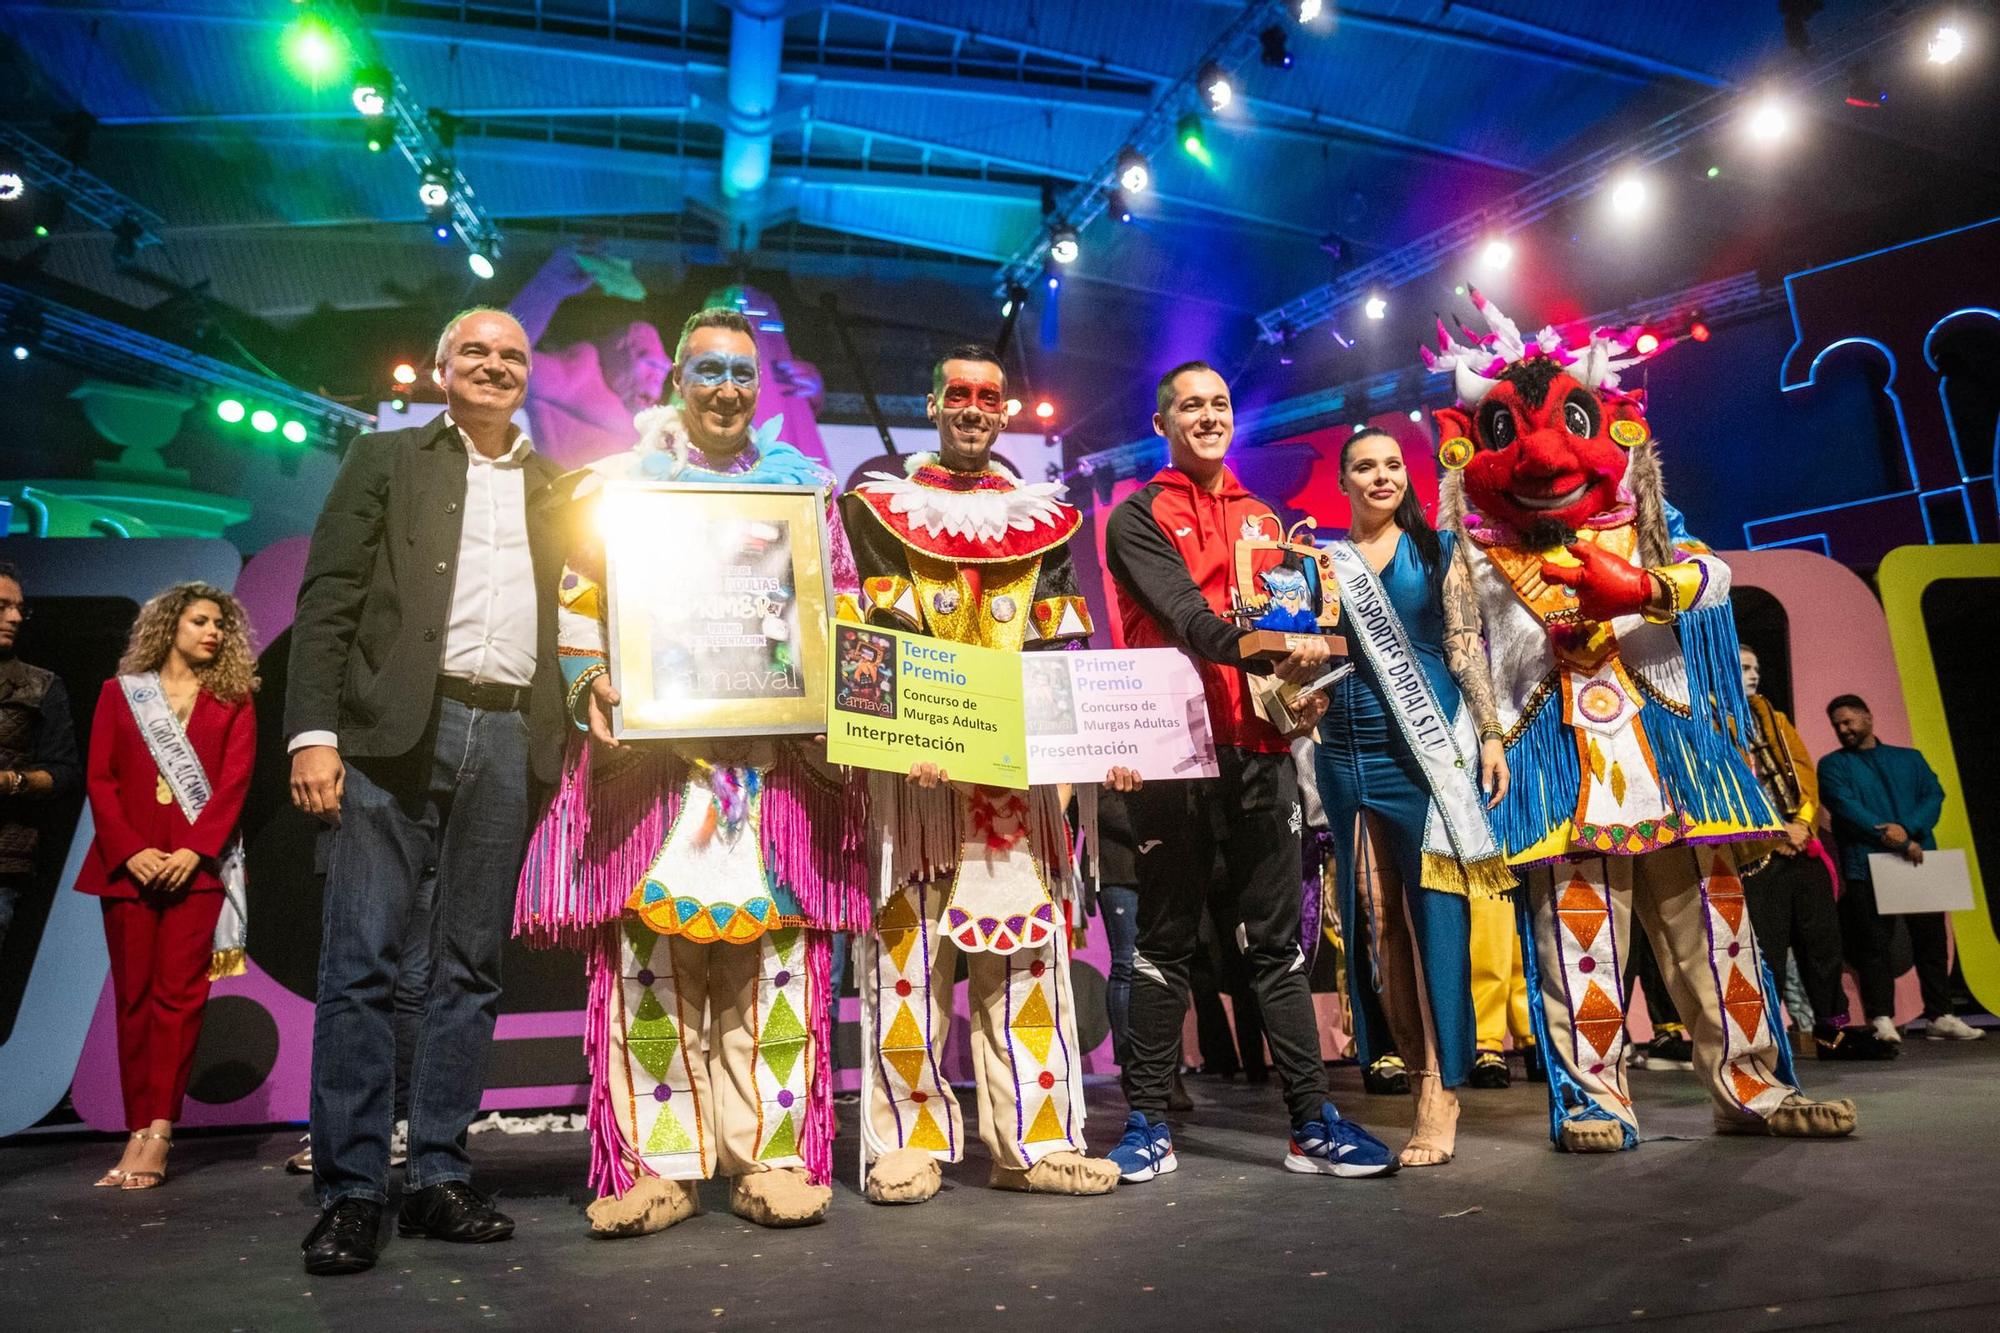 Entrega de premios de la final de Murgas Adultas del Carnaval de Santa Cruz de Tenerife